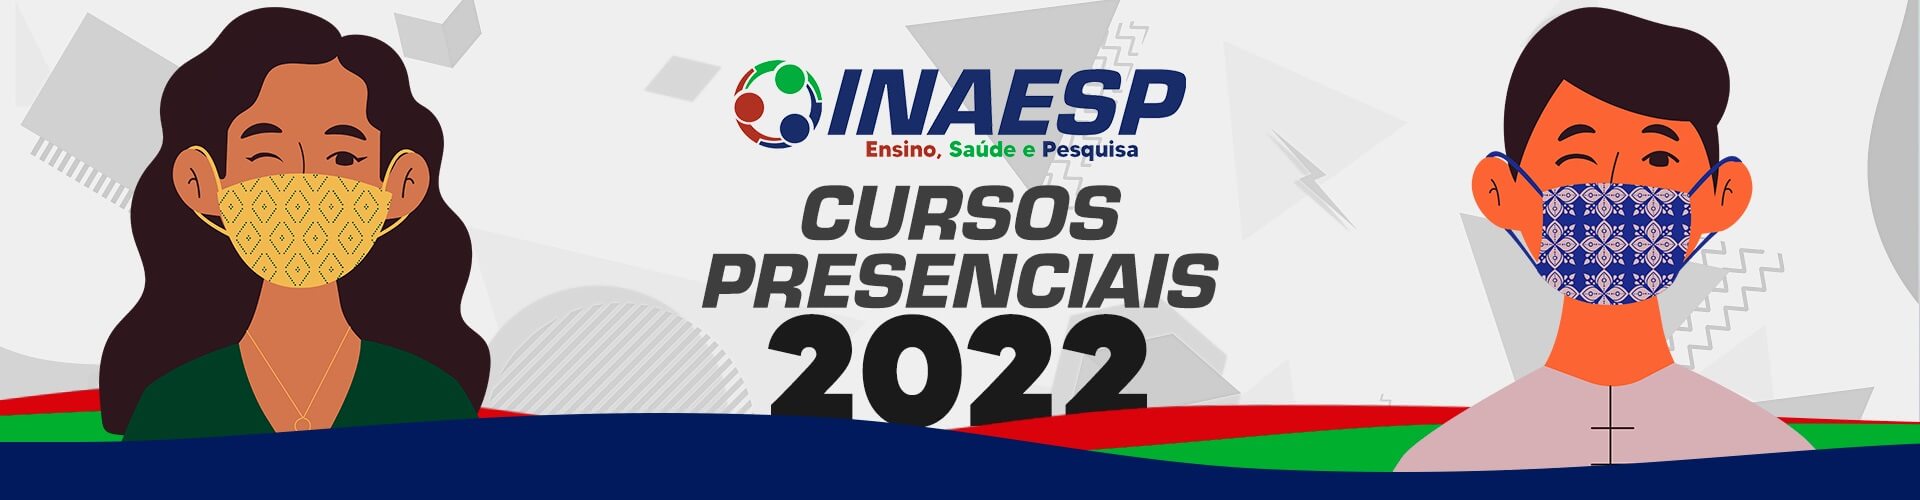 cursos-presenciais-2022